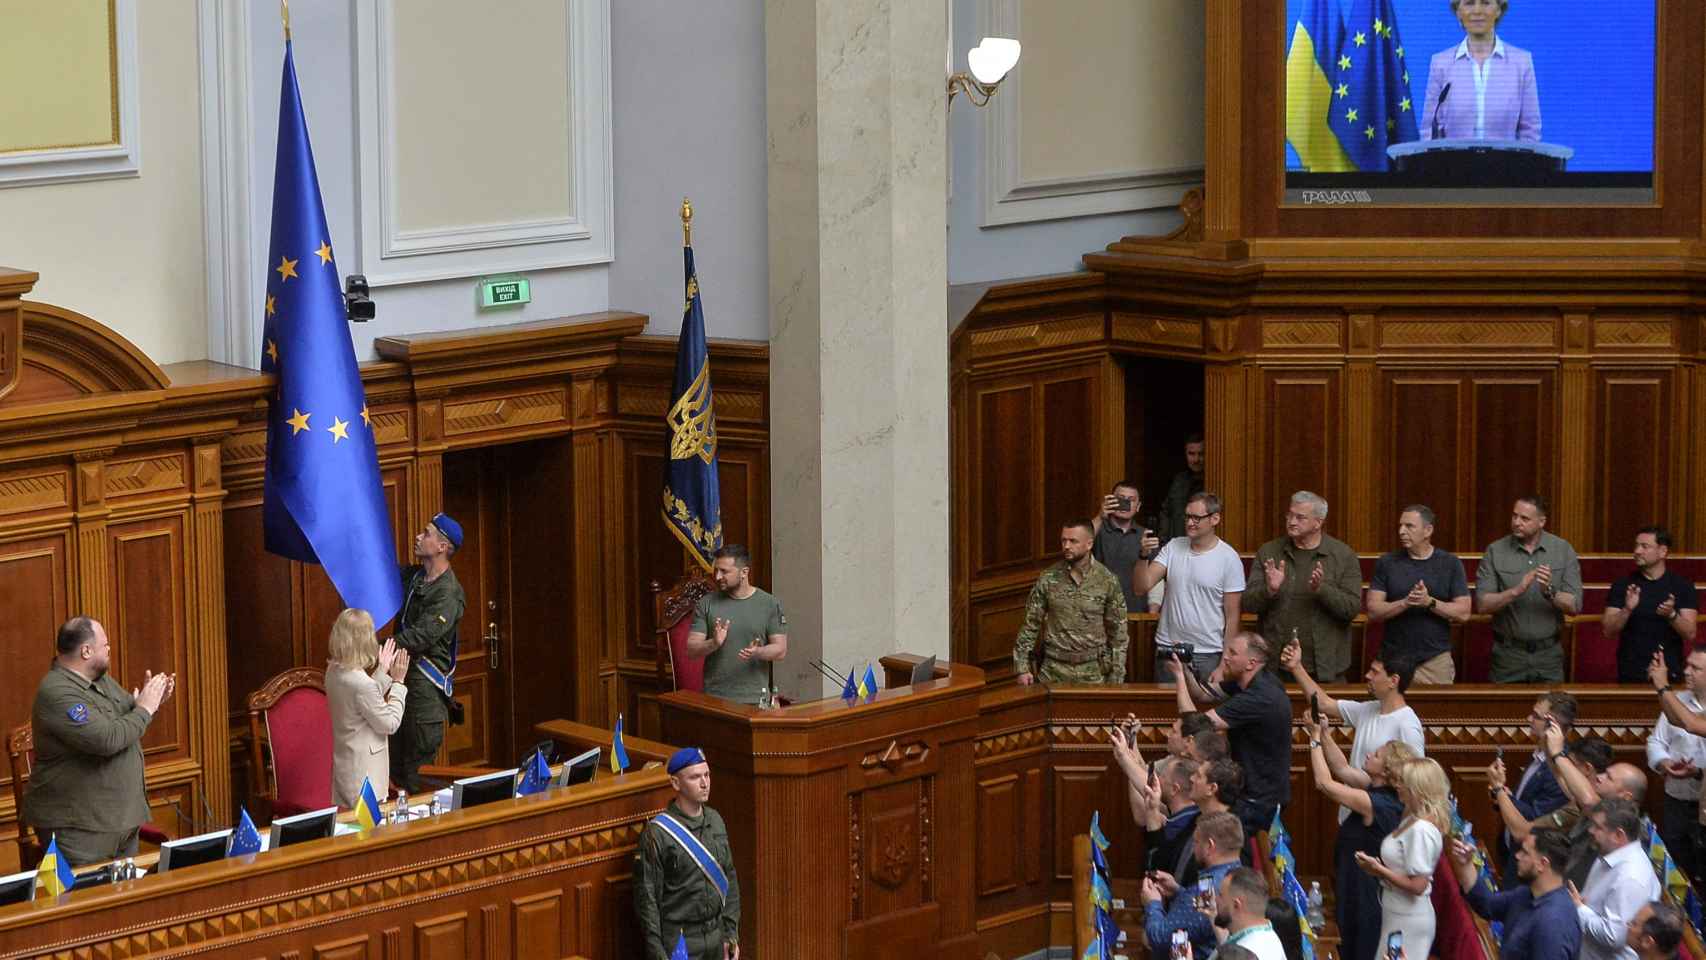 La bandera de la UE llega ao Parlamento ucraniano por primera vez entre aplausos de los diputados